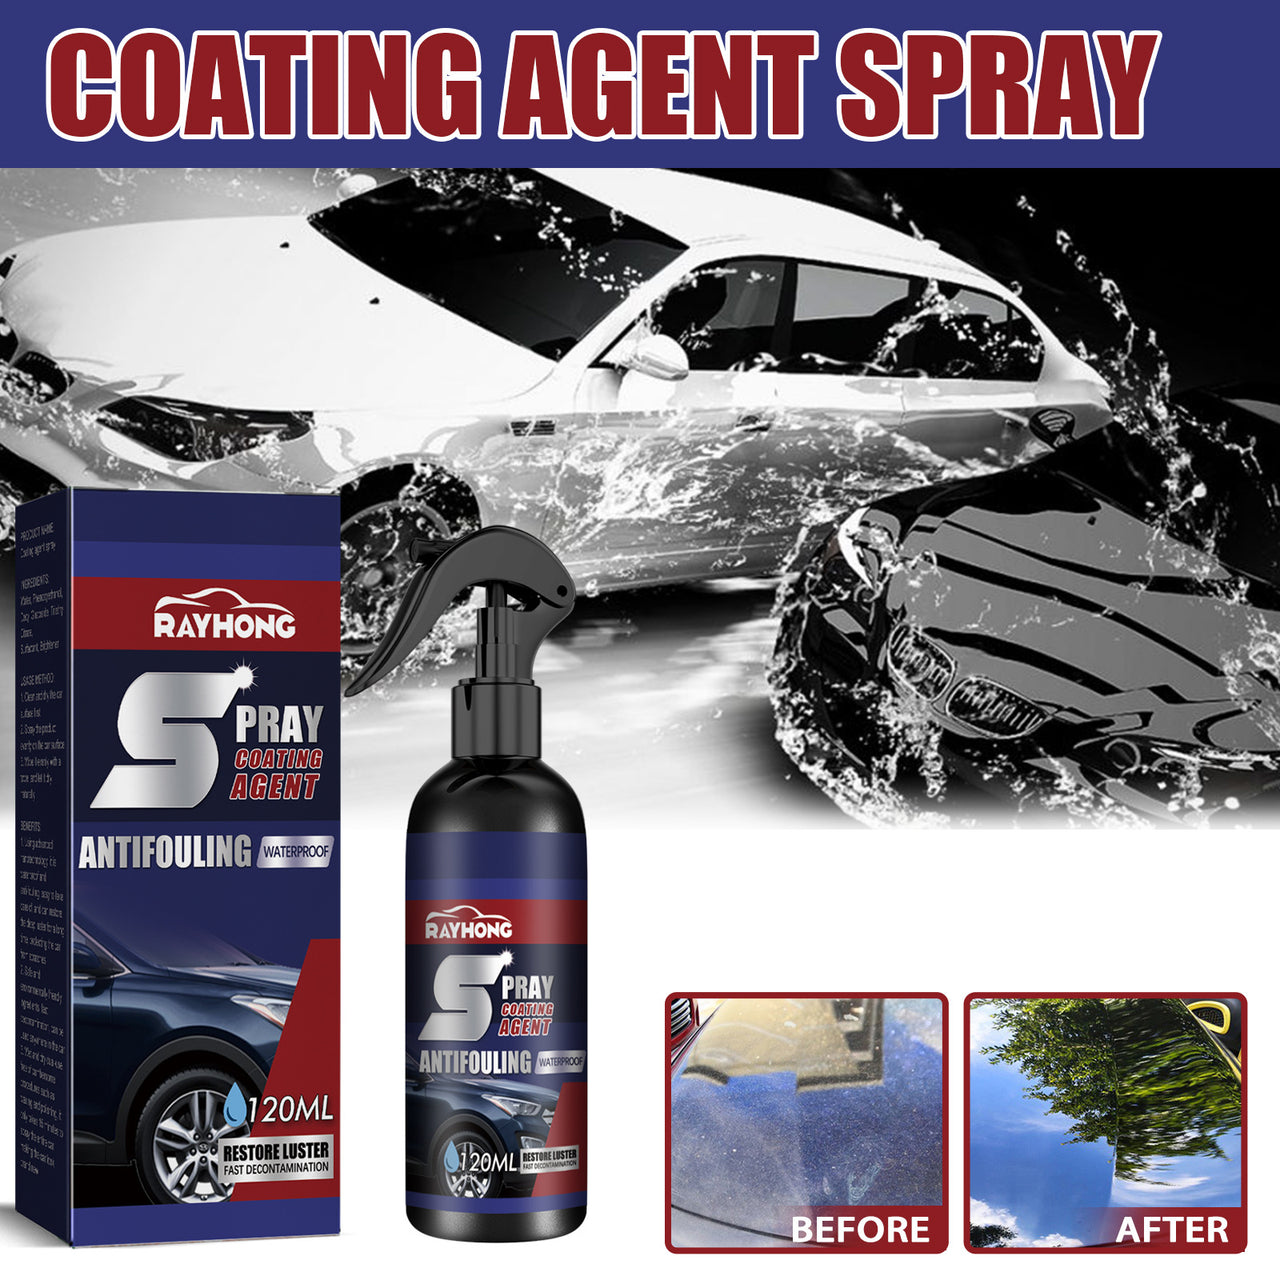 Spray Coating Agent for Cars – Tonya Toys